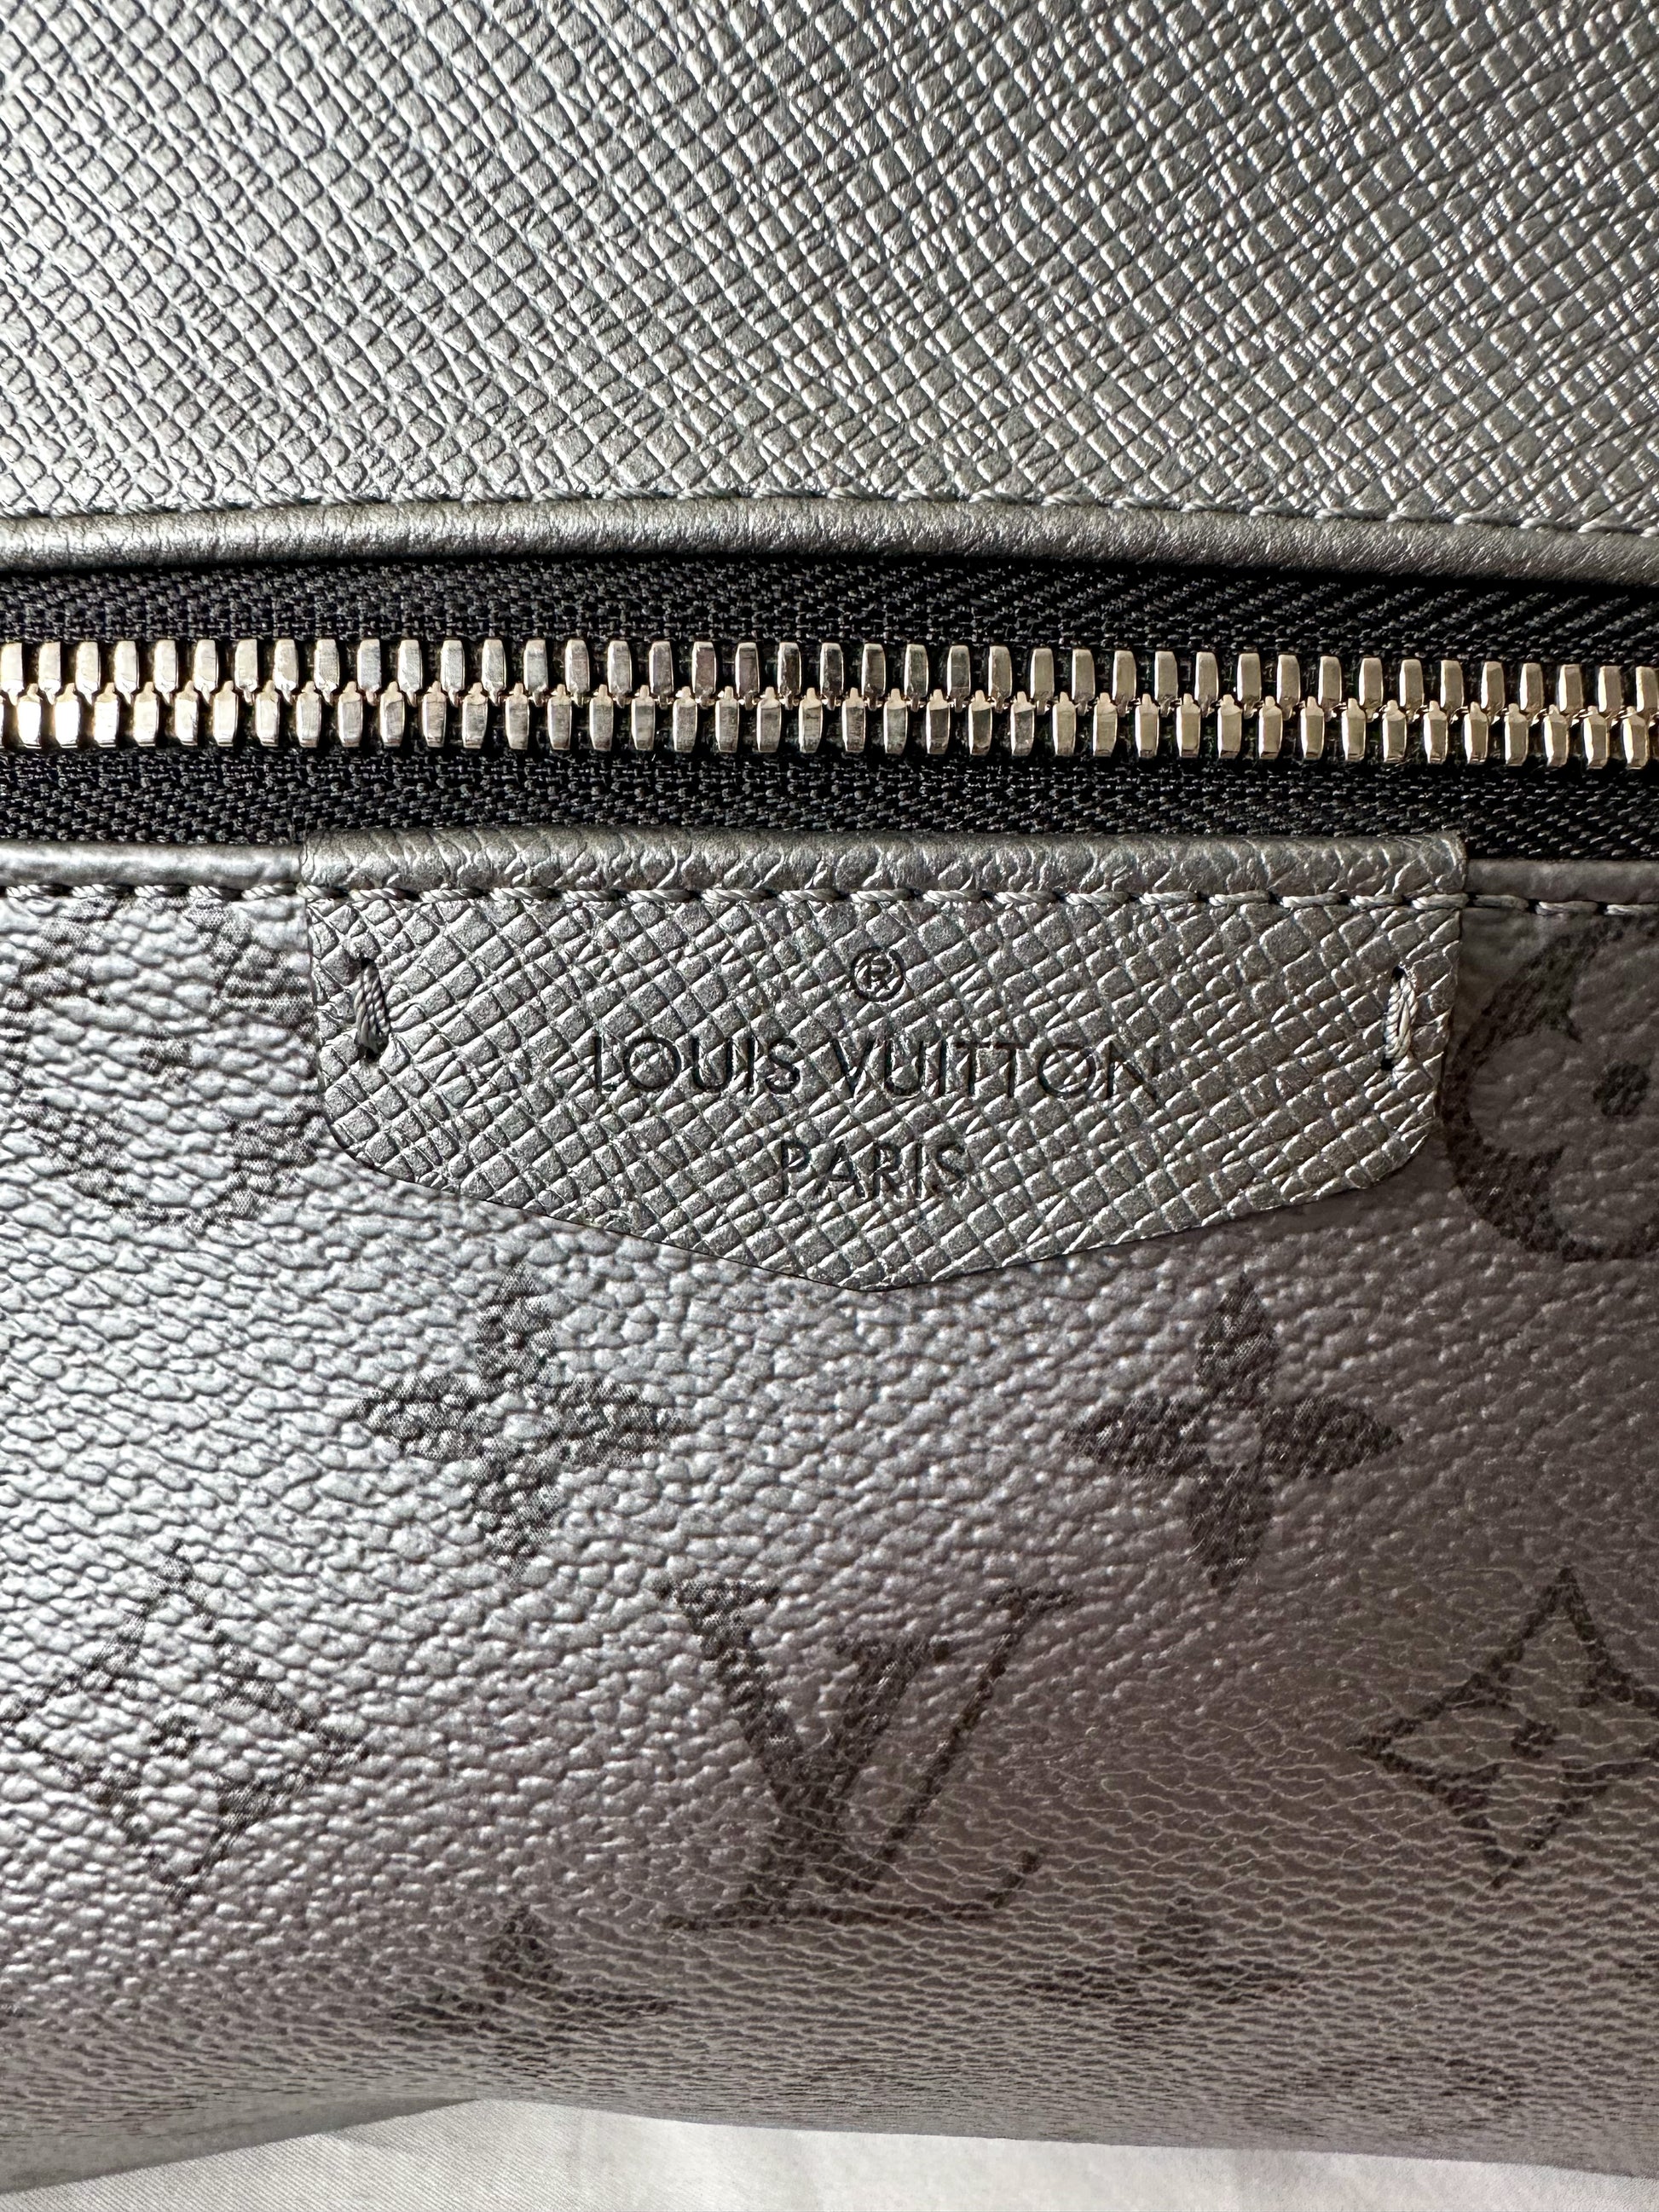 Louis Vuitton Silver Taigarama Outdoor Messenger Silver Hardware